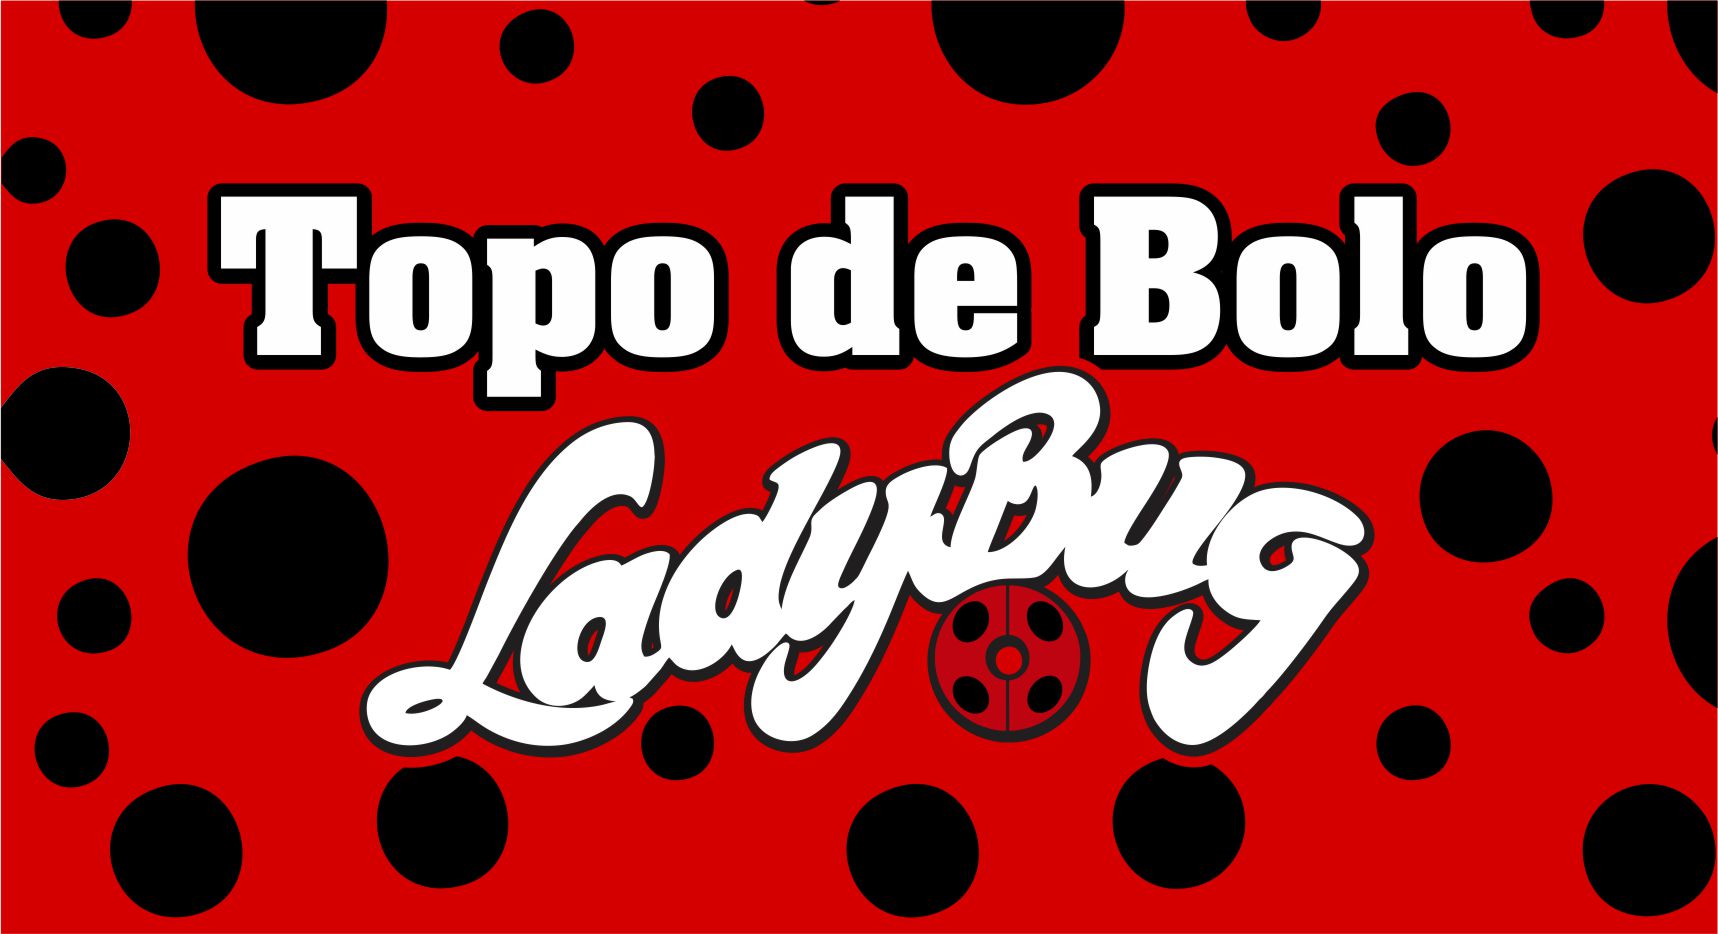 Luciene Express - Topo de bolo- Ladybug